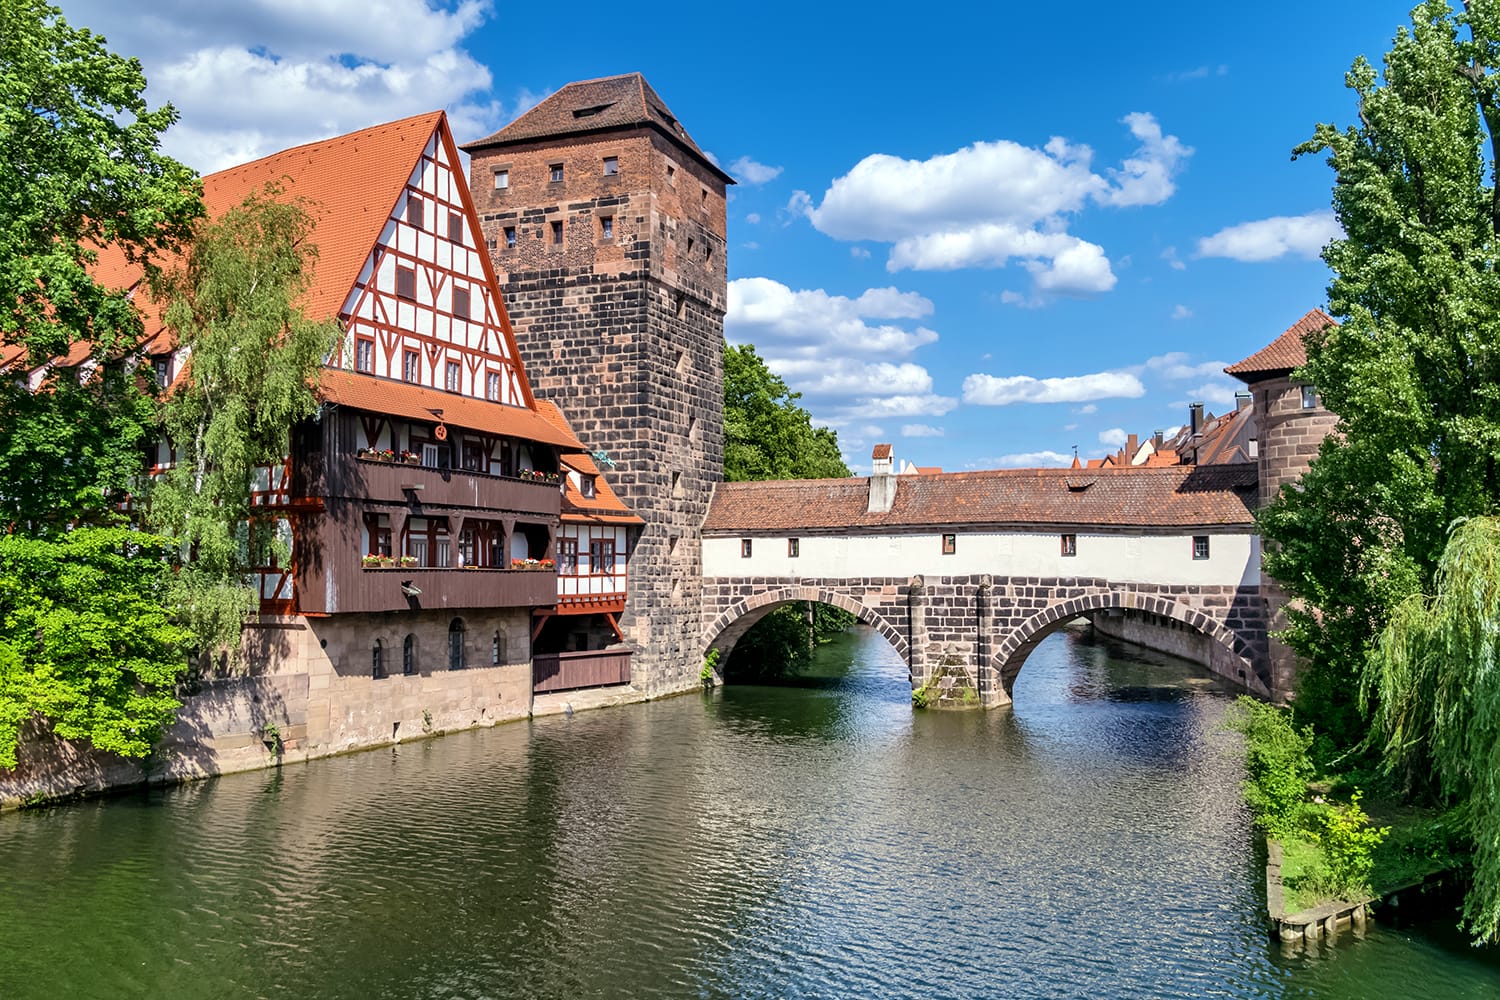 Riverfront in Nuremberg, Germany